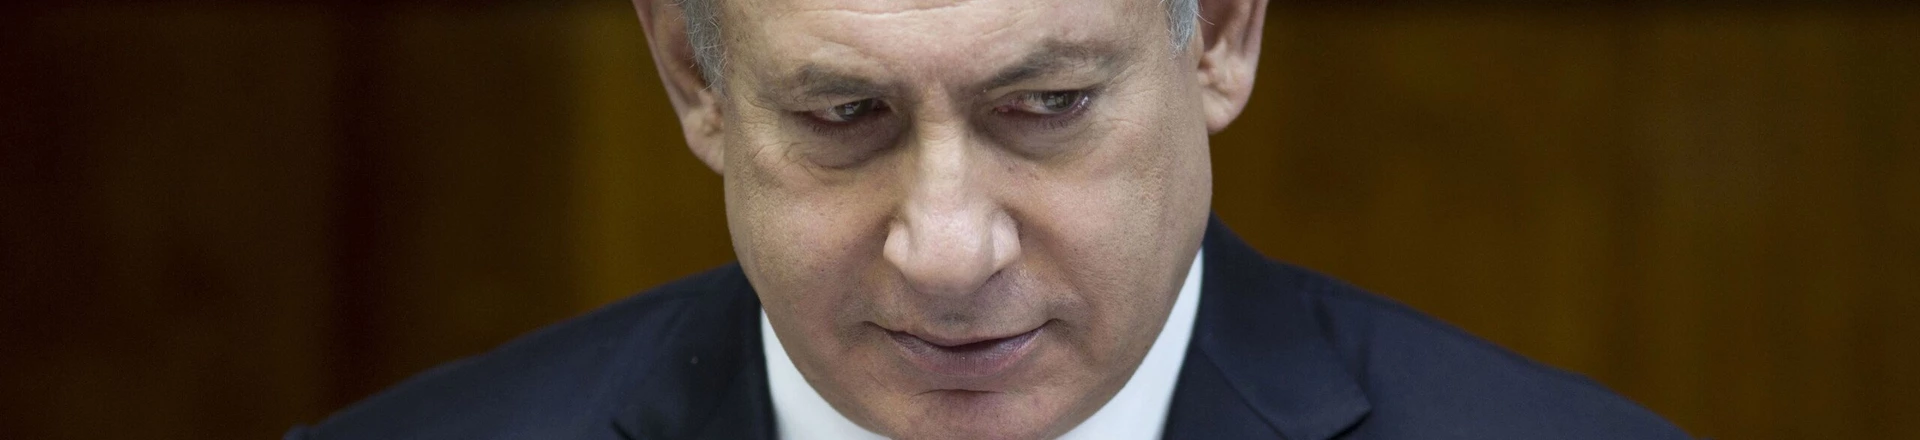 O primeiro-ministro israelense Benjamin Netanyahu preside o encontro semanal do gabinete em seu escritório, em Jerusalém, em 11 de dezembro de 2016.